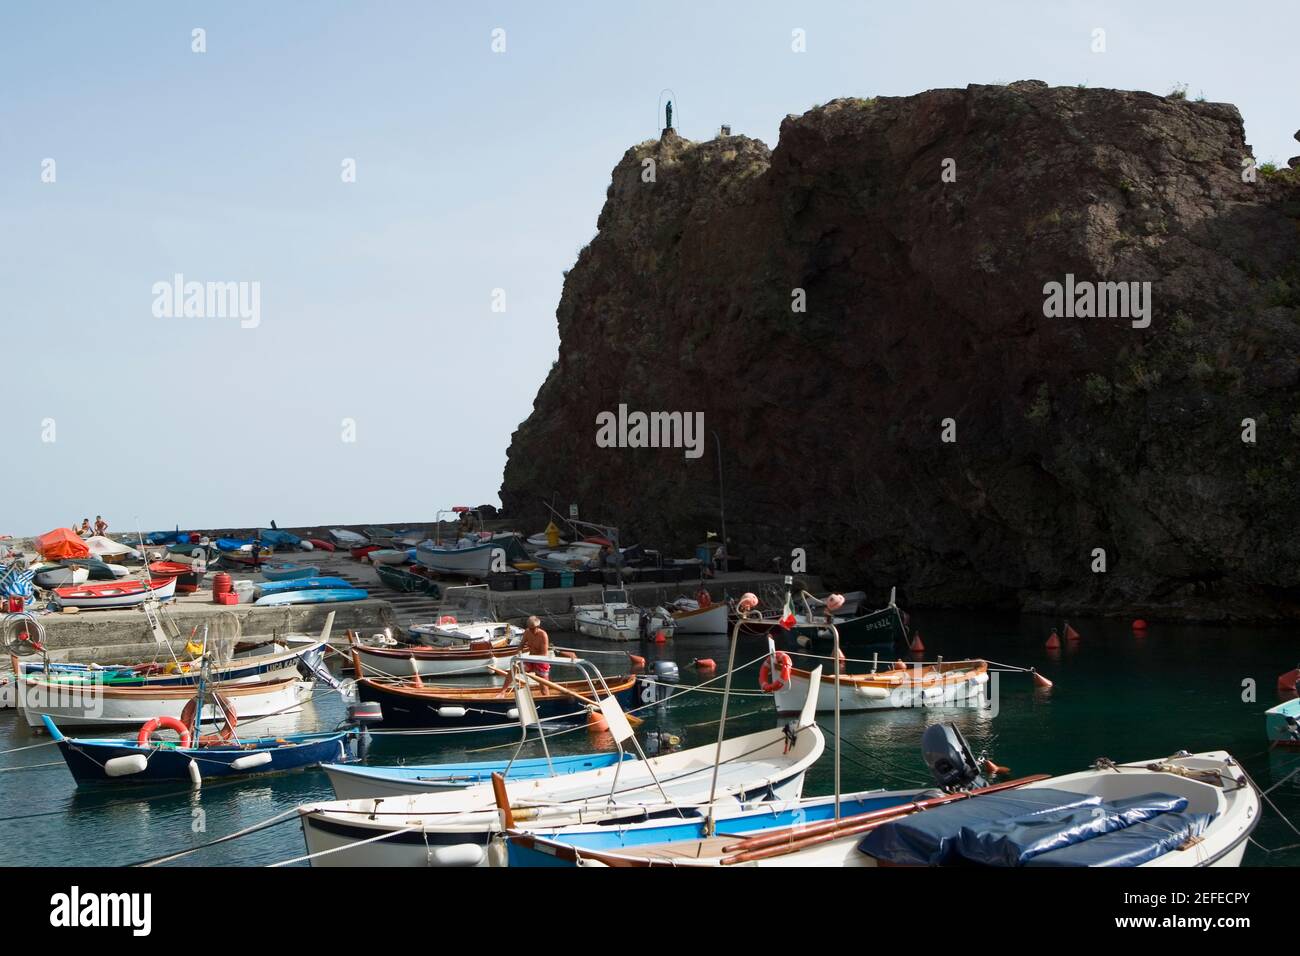 Boats moored at a harbor, Italian Riviera, Cinque Terre National Park, Mar Ligure, RioMaggiore, Cinque Terre, Vernazza, La Spezia, Liguria, Italy Stock Photo